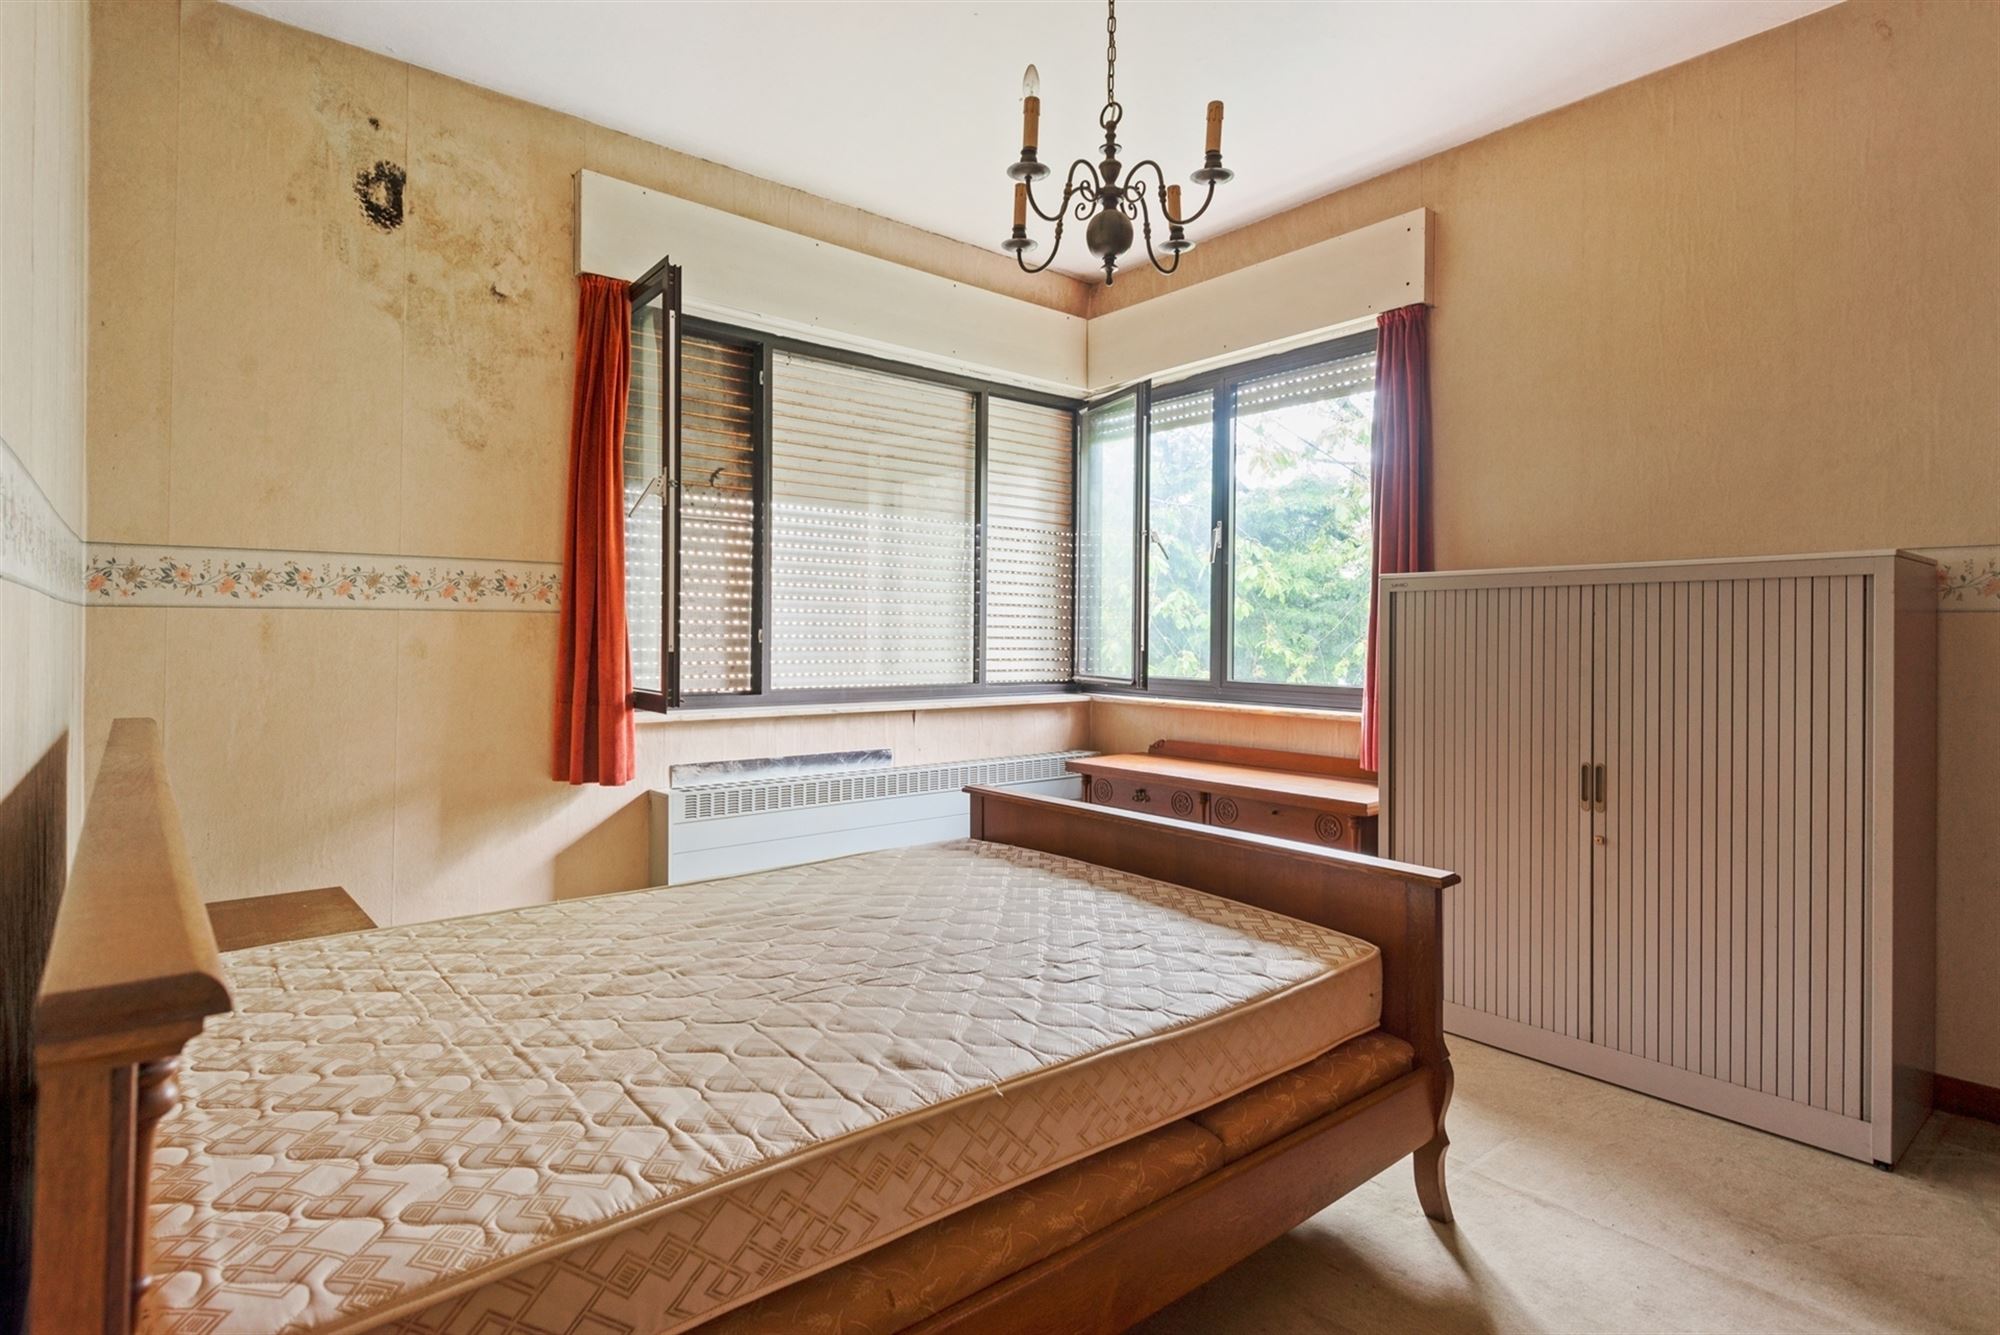 Gezinswoning met 4 slaapkamers te Mechelen